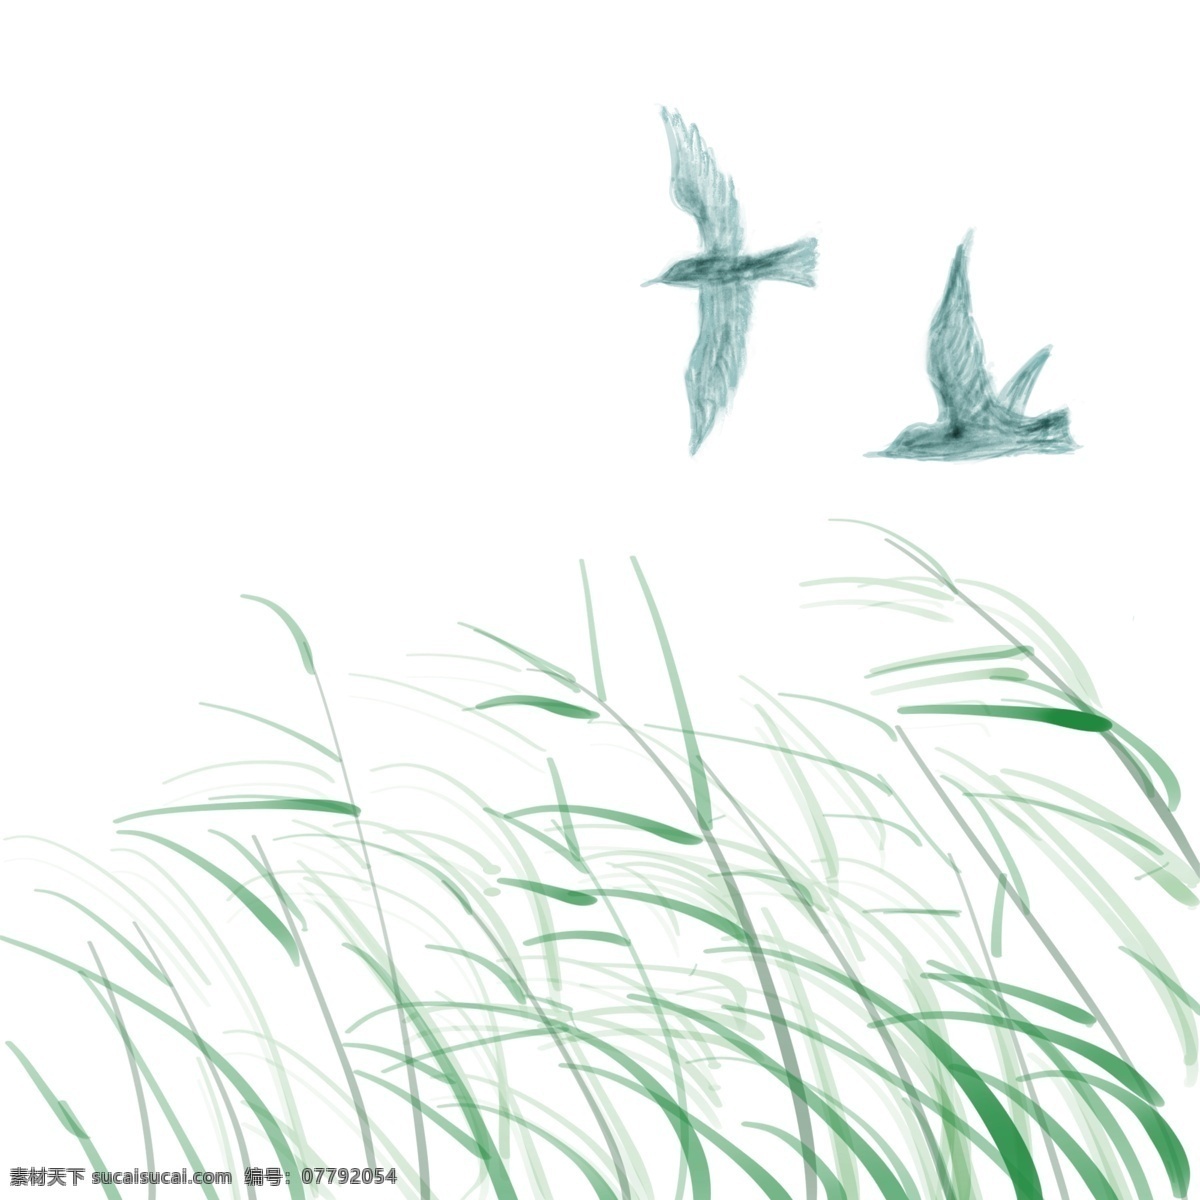 水草 飞鸟 手绘 场景 草丛 清新 春夏 蓝绿调 森系 植物 浪漫